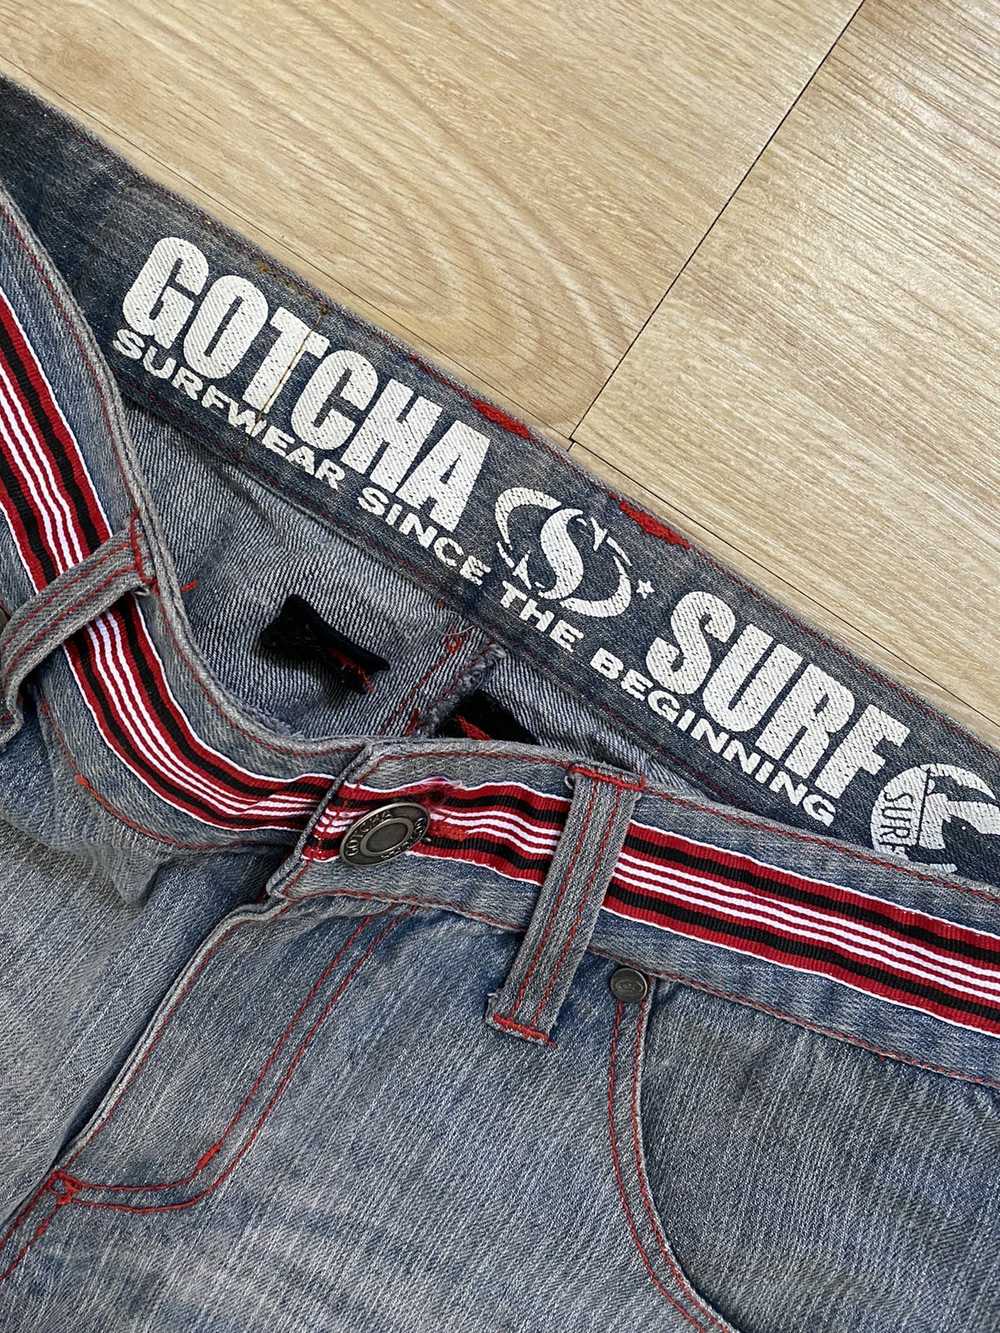 Gotcha - GOTCHA SURFWEAR DENIM PANTS - image 11